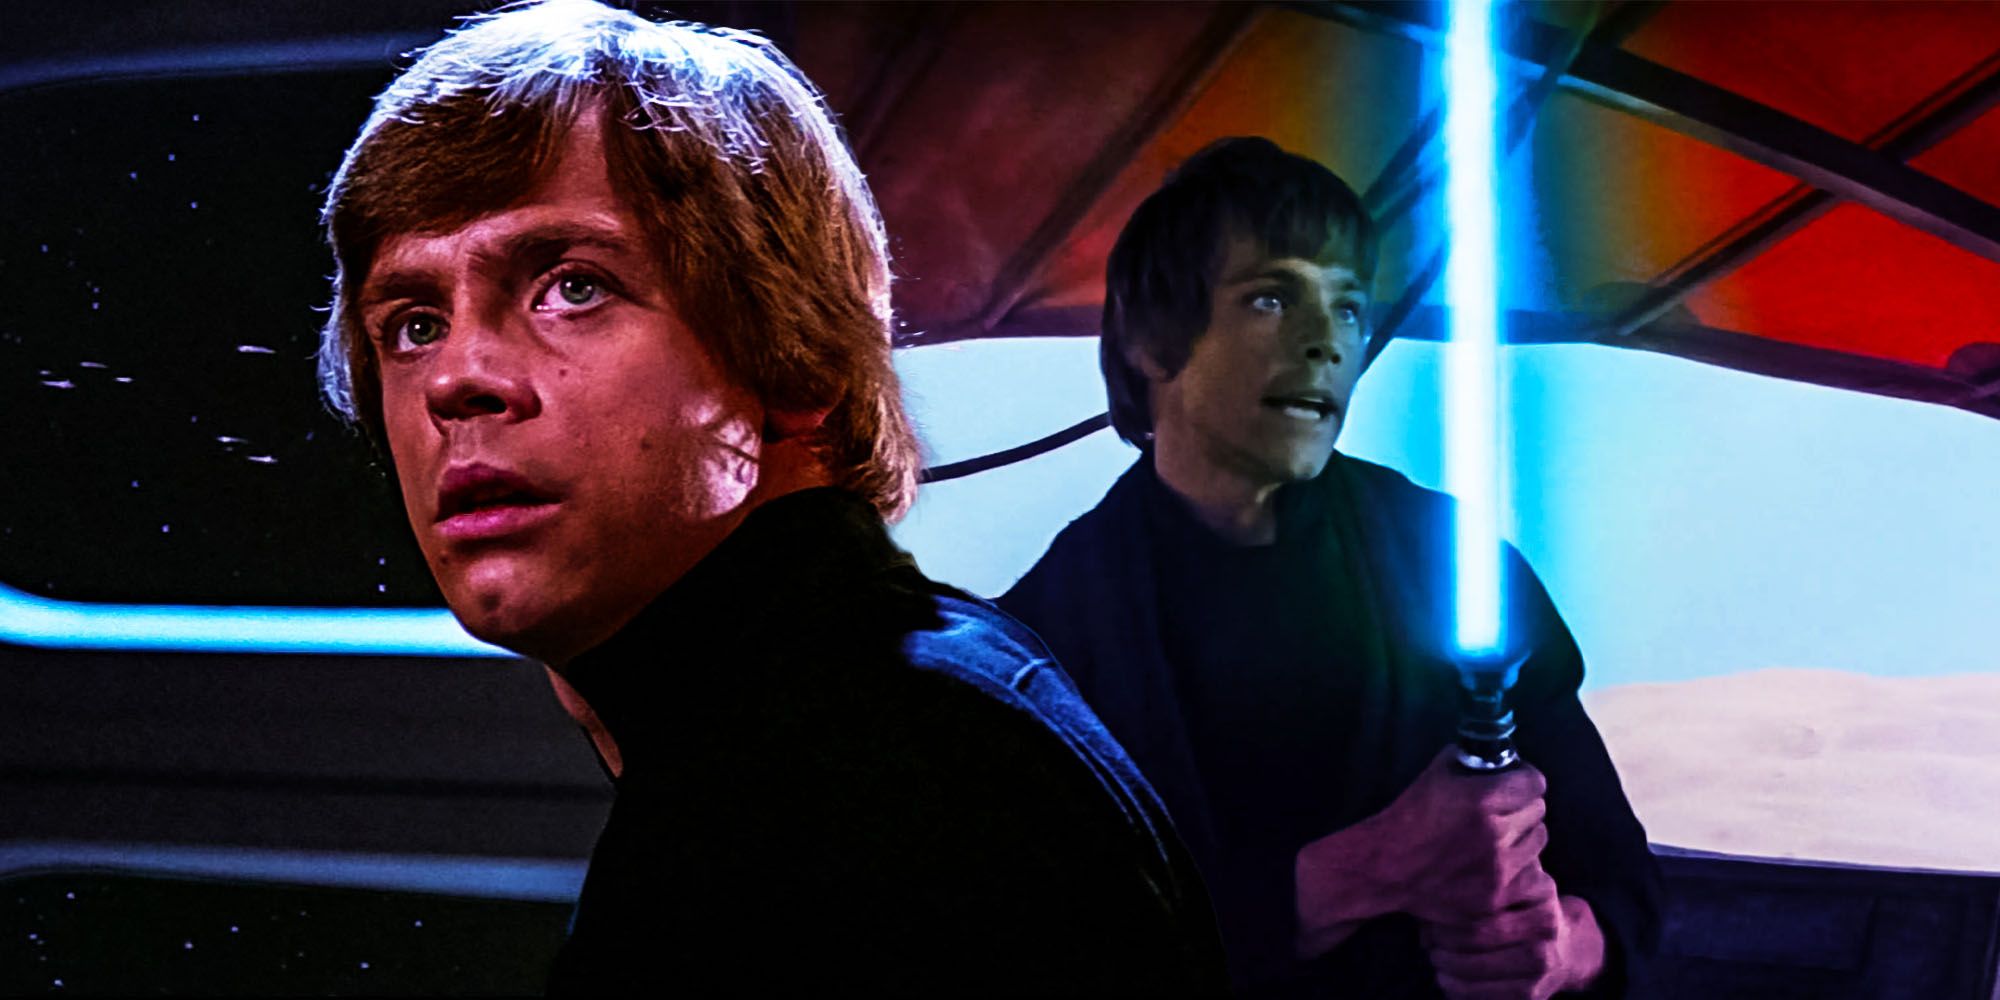 Star wars return of the Jedi Luke skywalker had lightsaber color changed